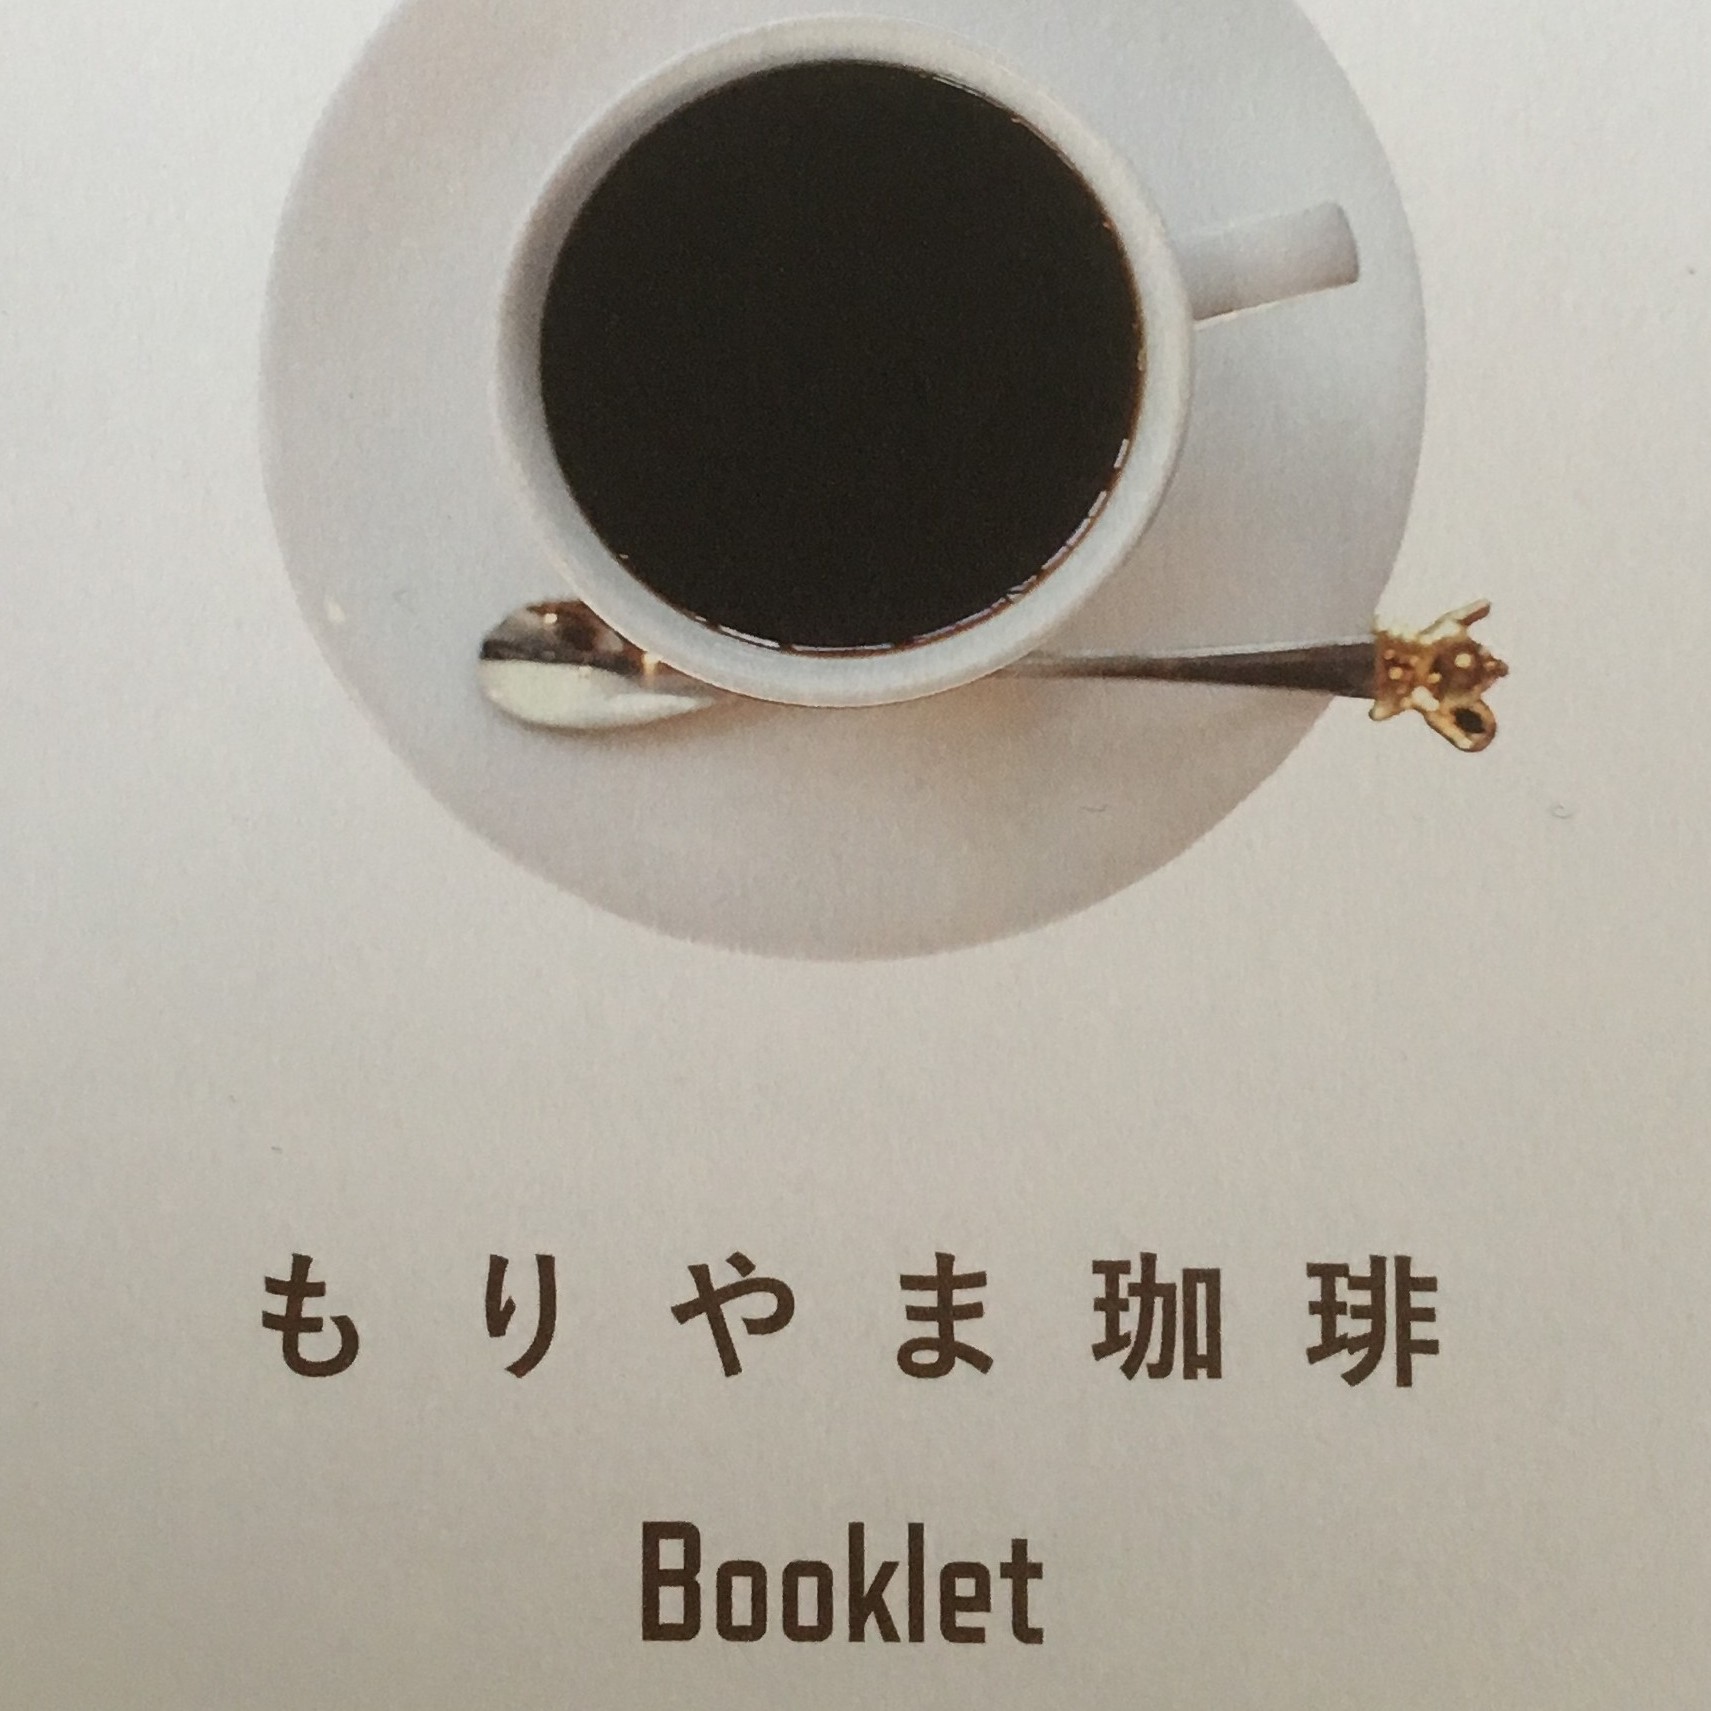 珈琲(コーヒー)の街 ”守山” のオススメばかりを集めた ”もりやま 珈琲 Booklet(ブックレット)” が面白い！